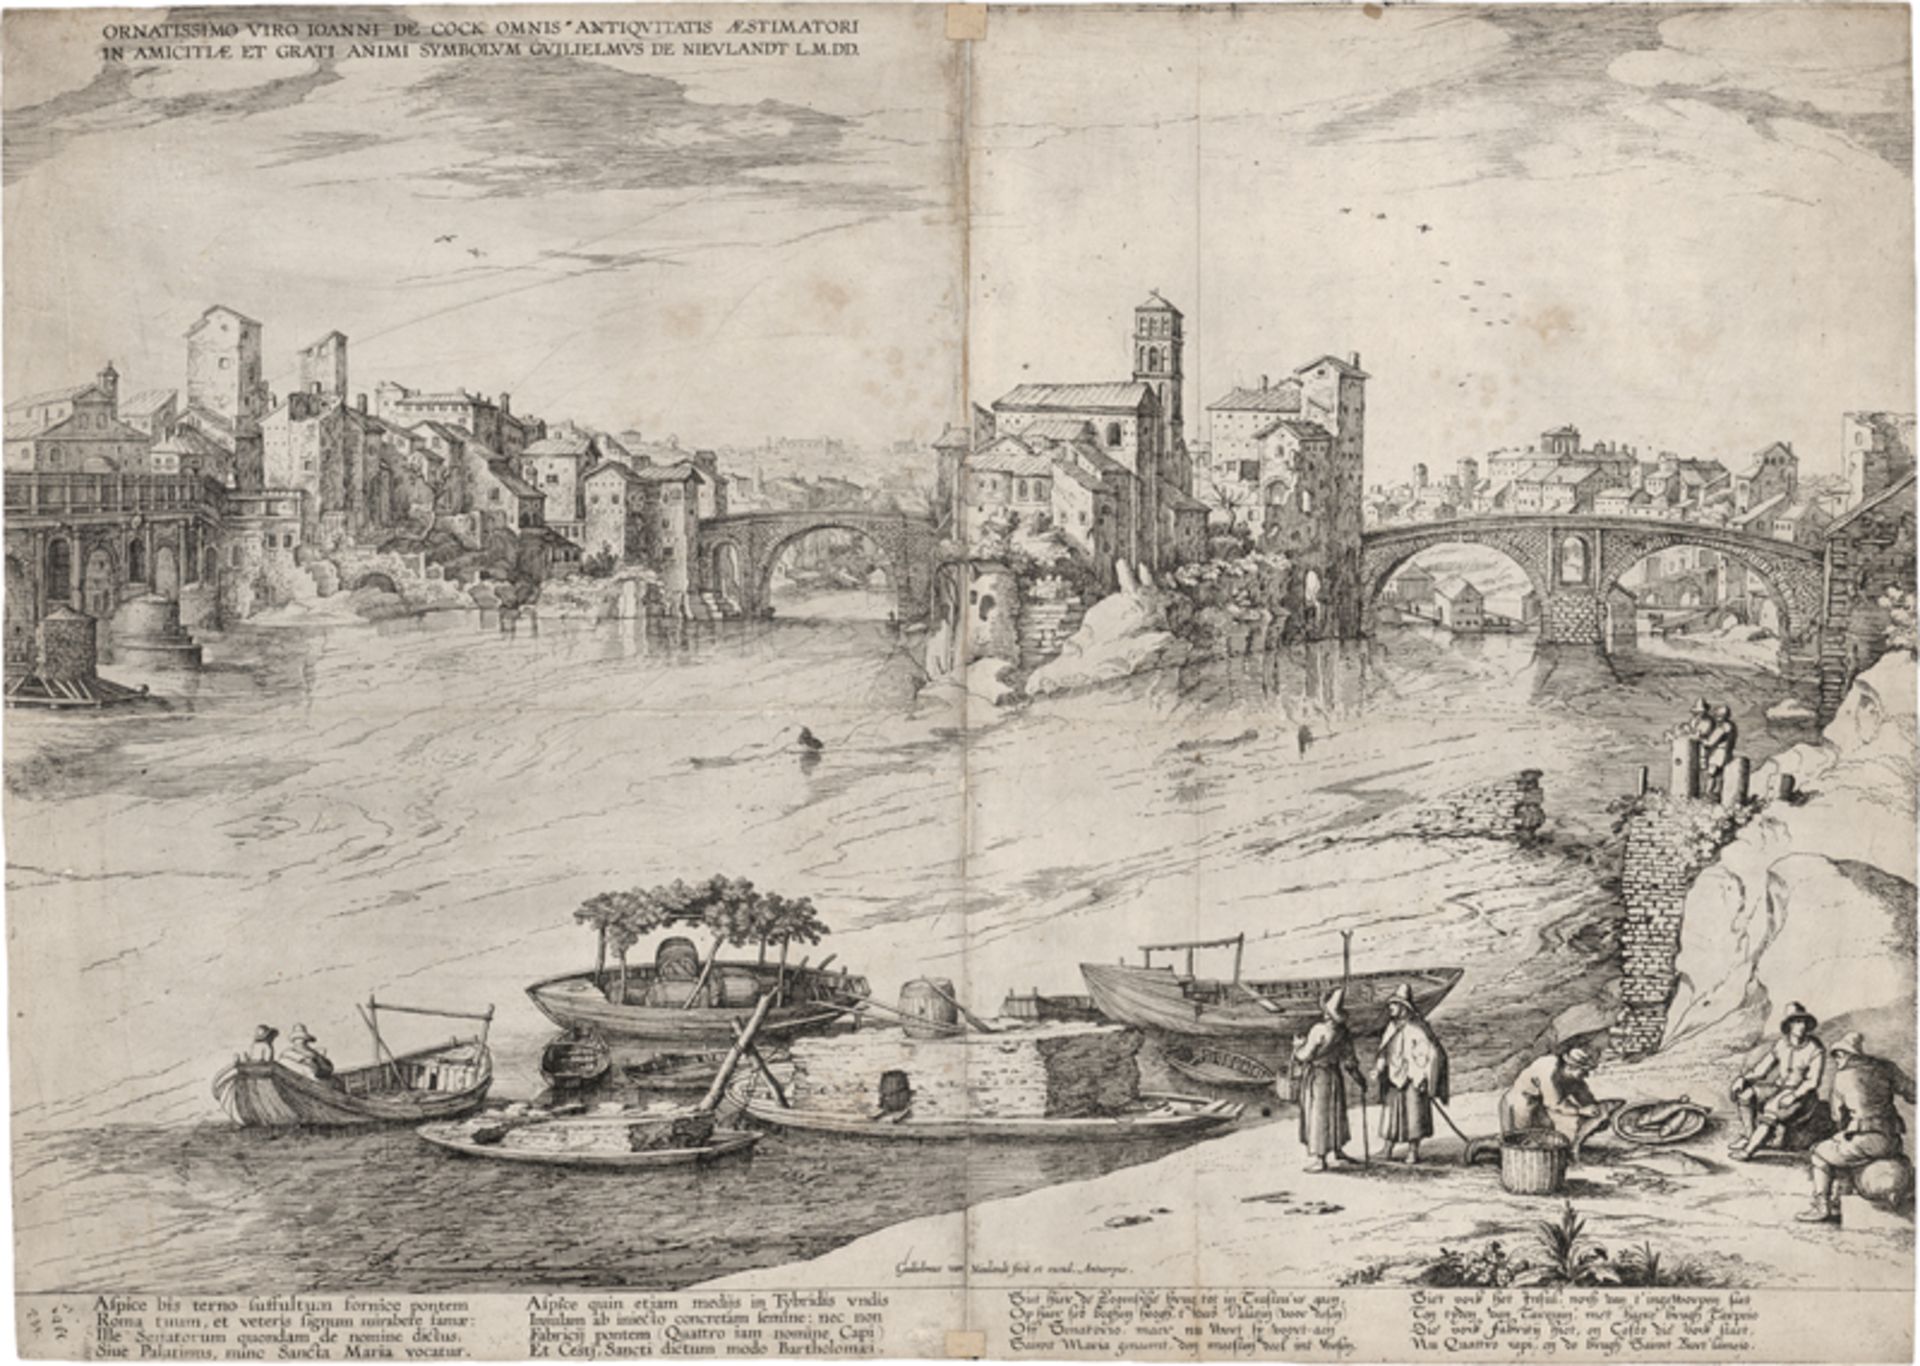 Nieulandt, Willem van II: Große Ansicht von Rom mit Tiberinsel und Pons Aemilius